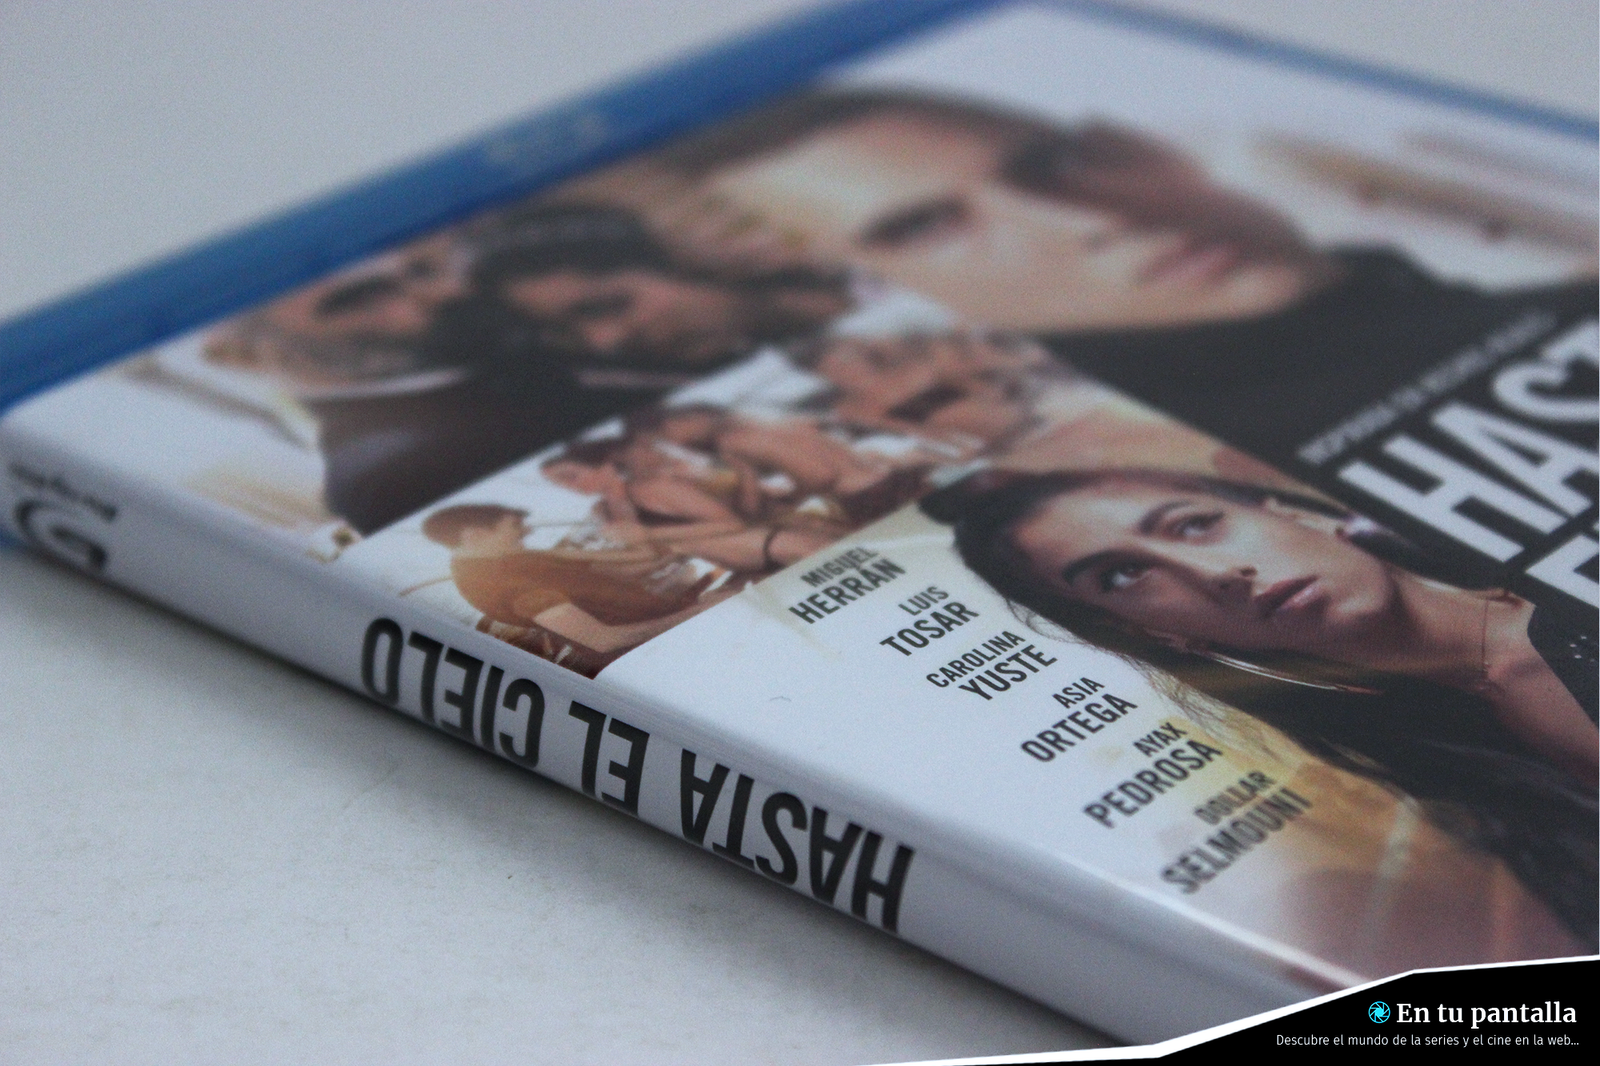 Análisis Blu-ray: ‘Hasta el cielo’, una de las últimas producciones españolas • En tu pantalla